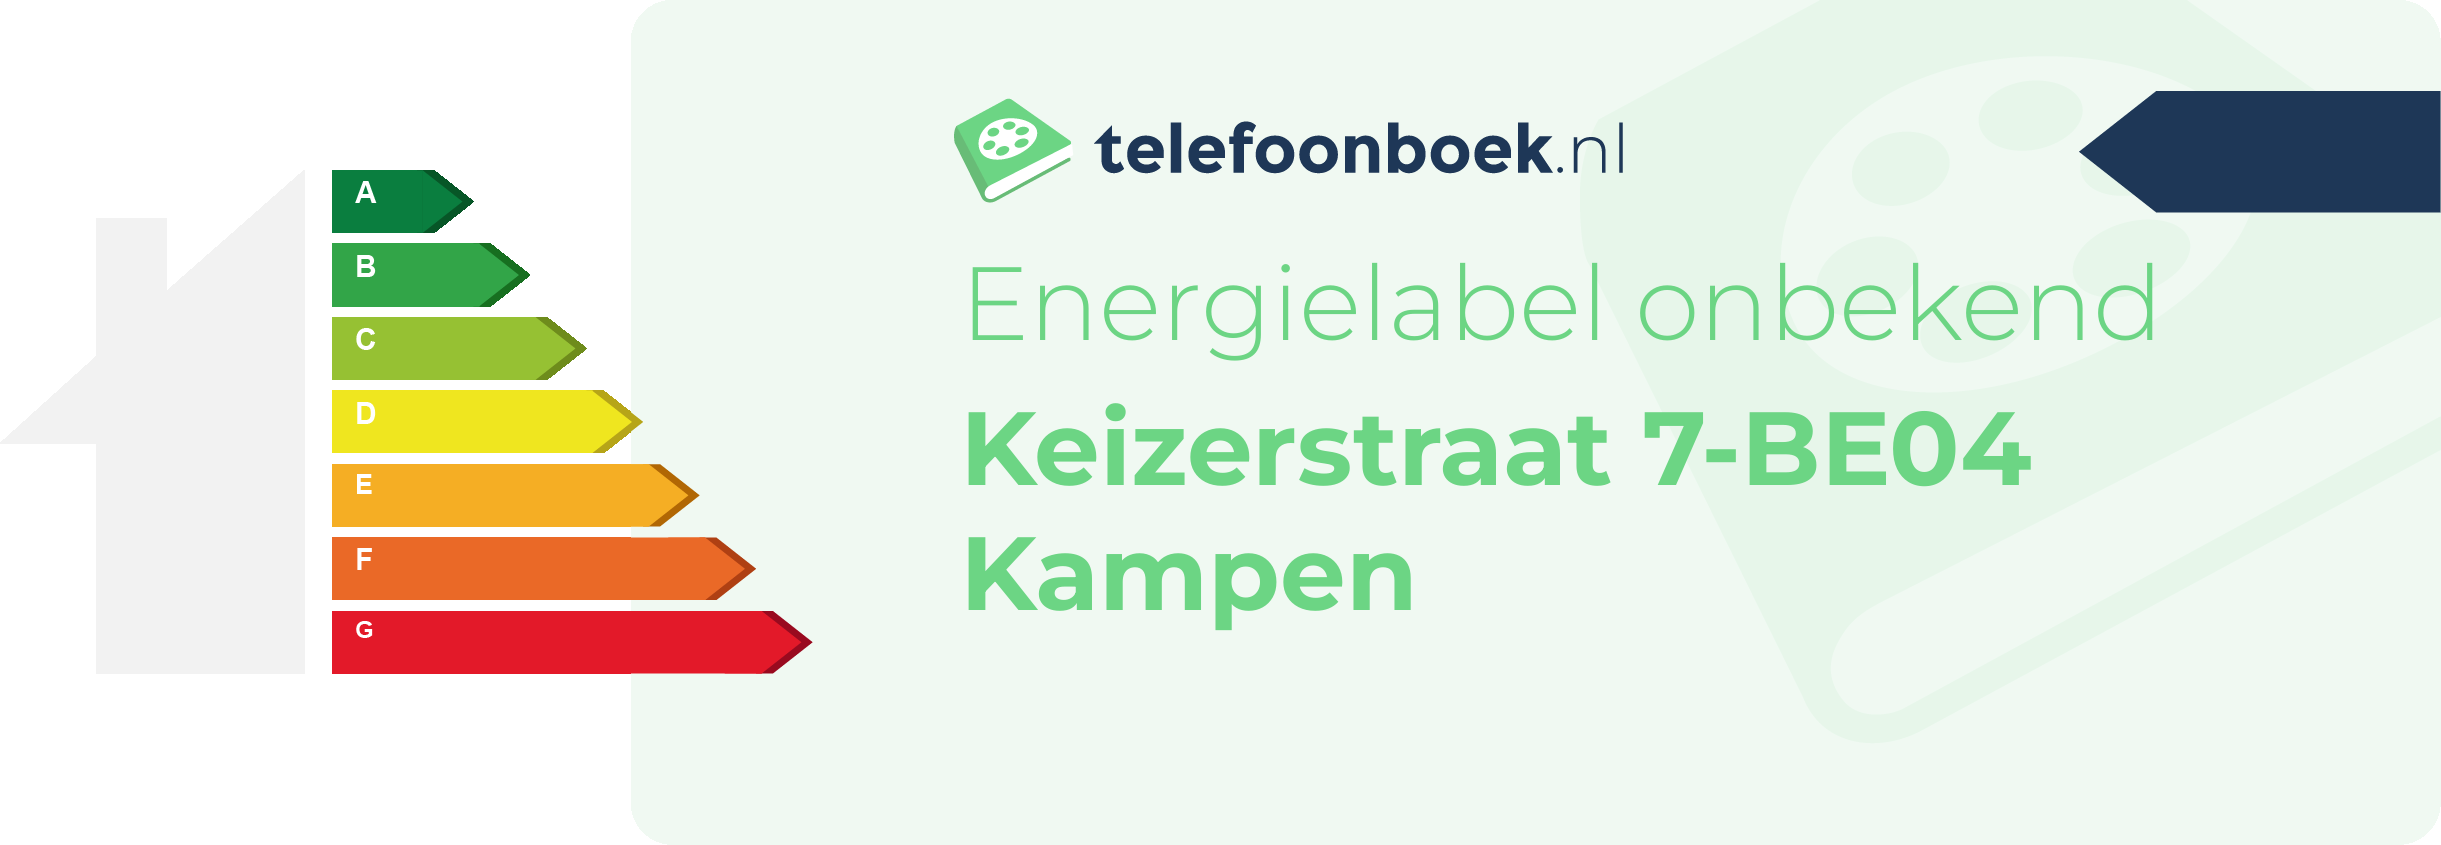 Energielabel Keizerstraat 7-BE04 Kampen